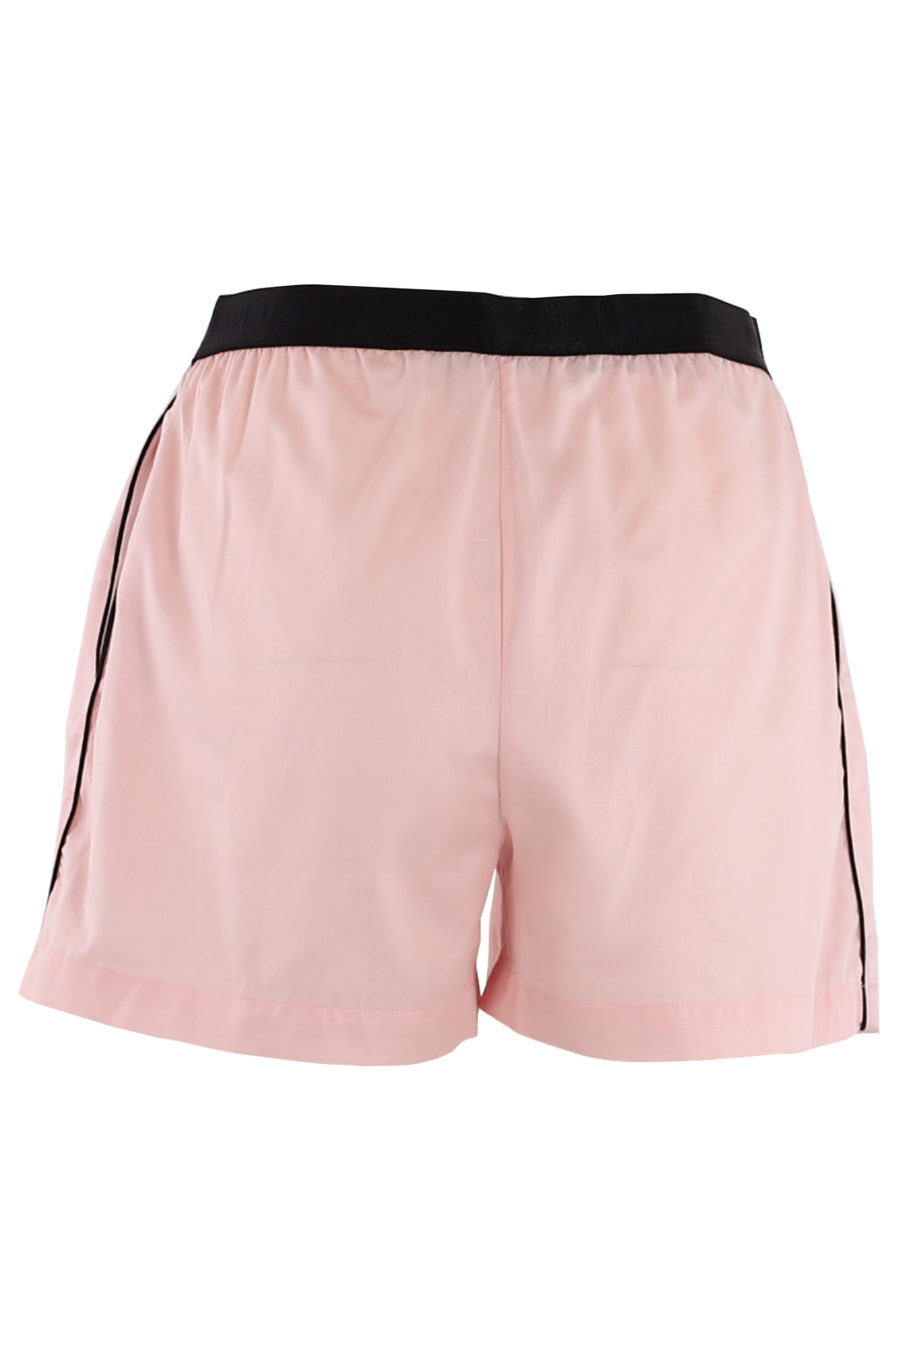 Conjunto pijama con pantalones cortos de color rosa - 9ac5faea6d34a2b6edb4b7cdb3b560f93f75ff1a